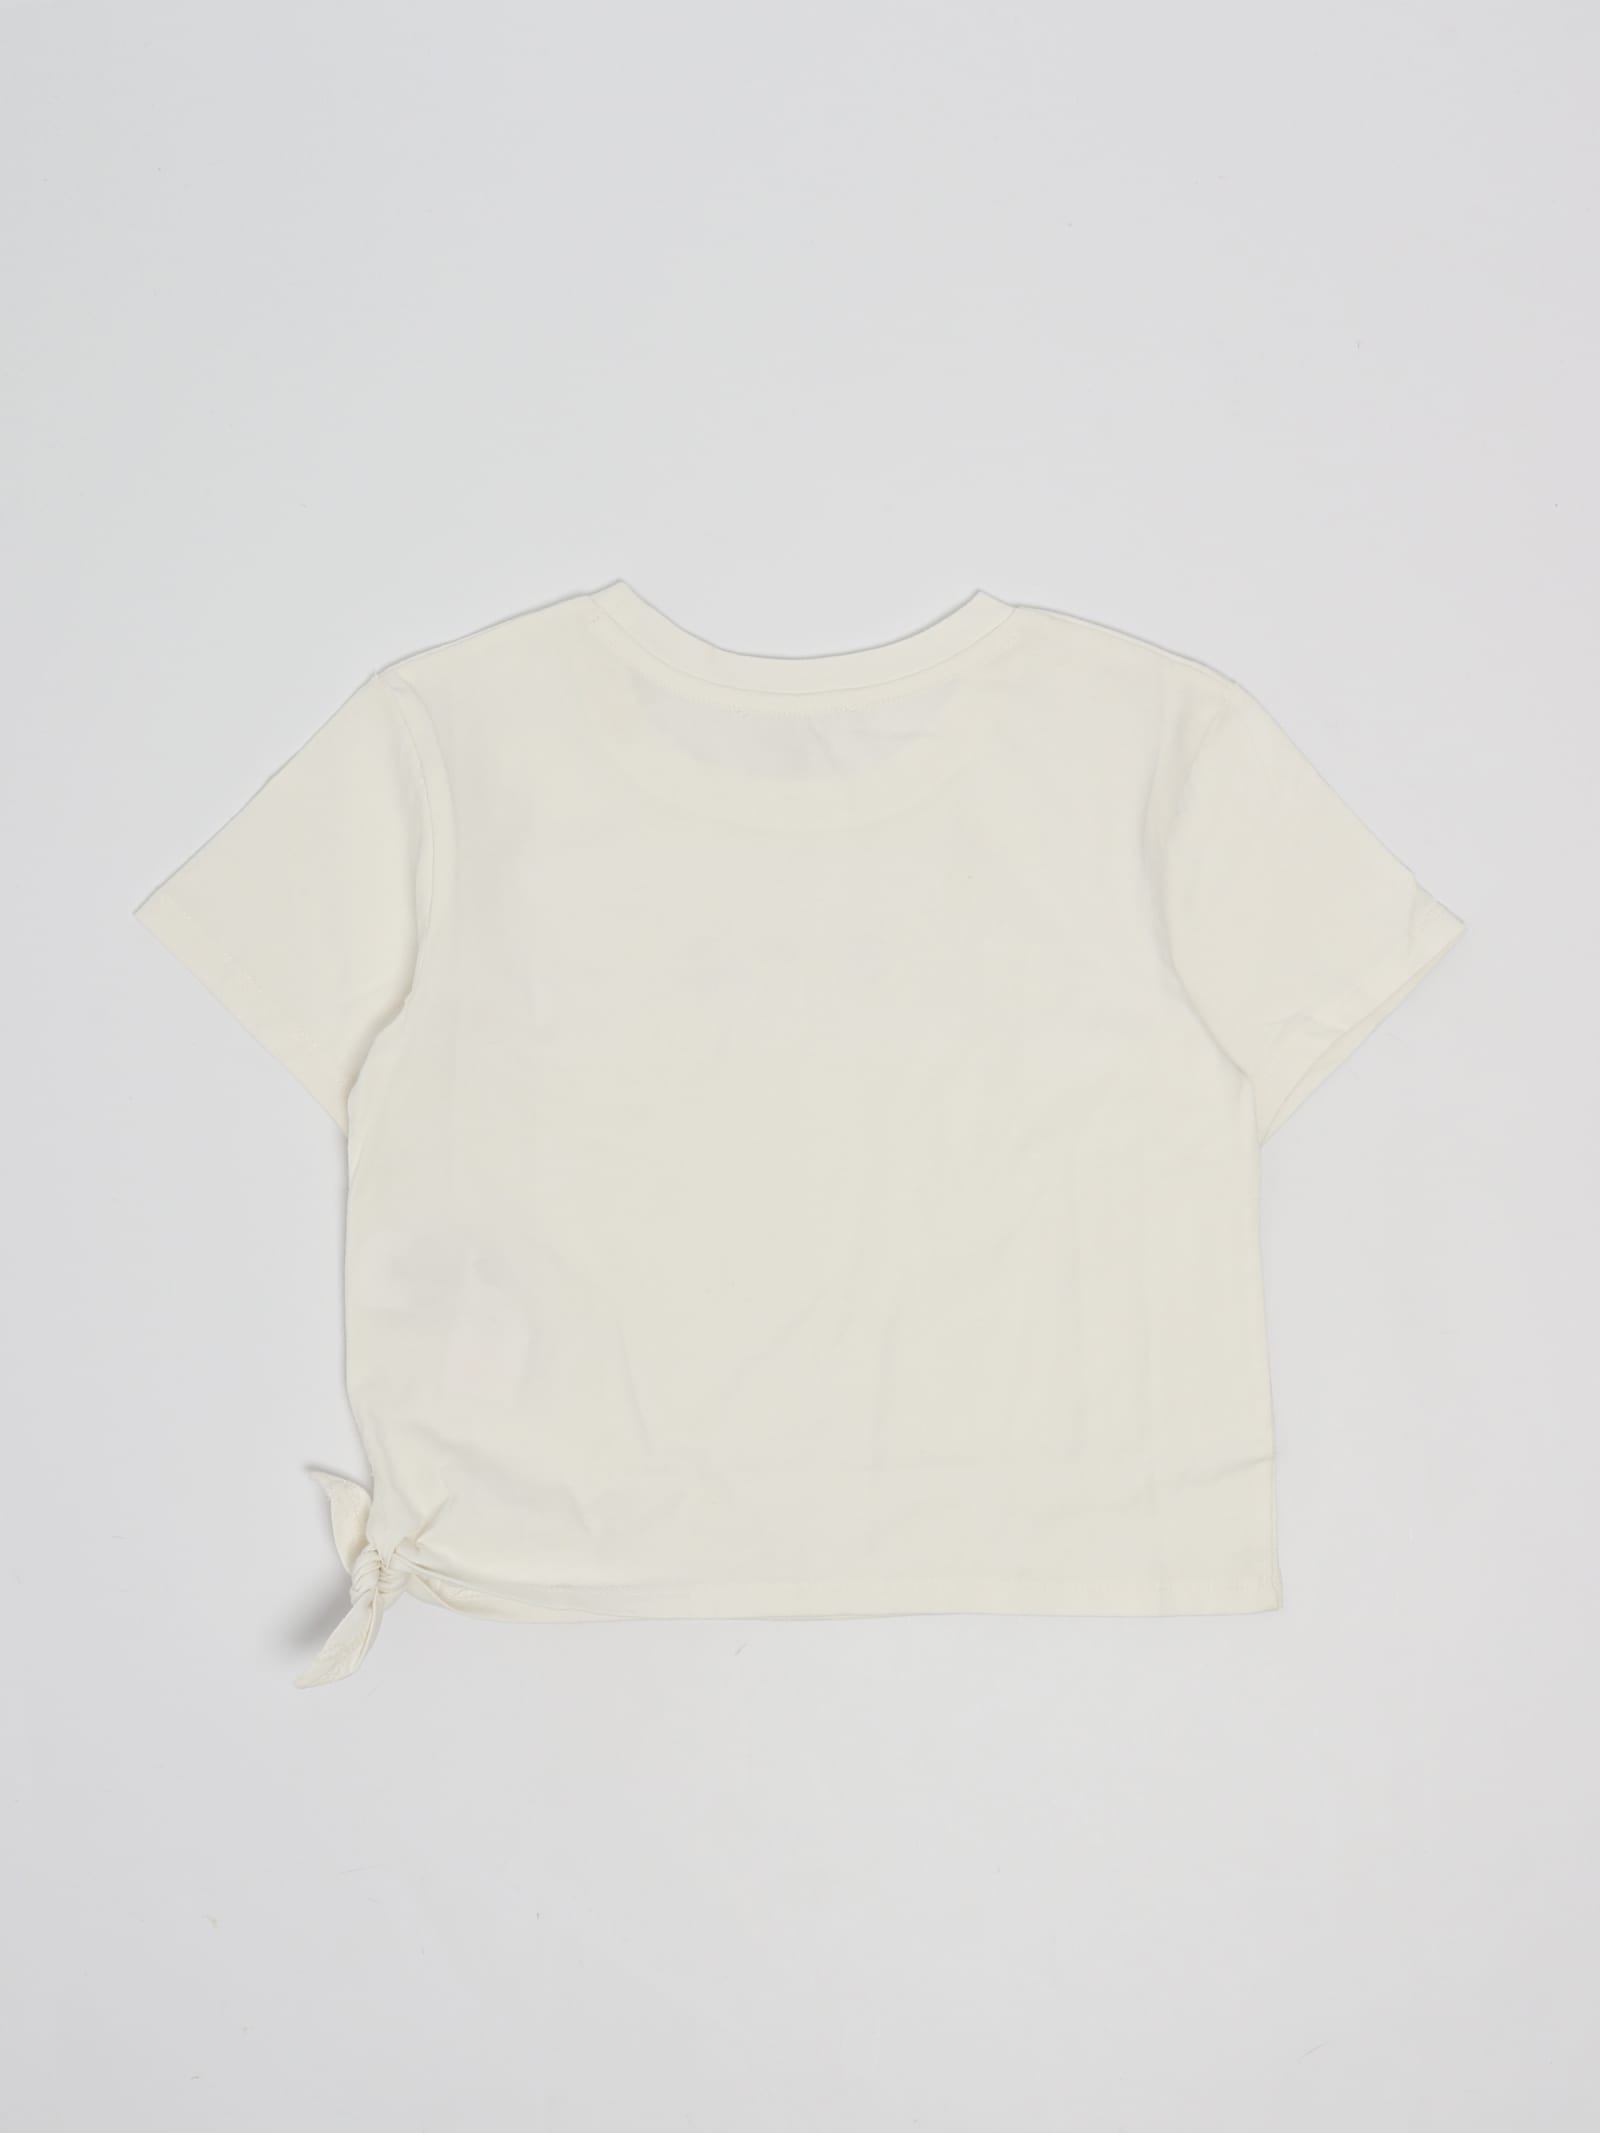 Shop Michael Kors T-shirt T-shirt In Bianco Sporco